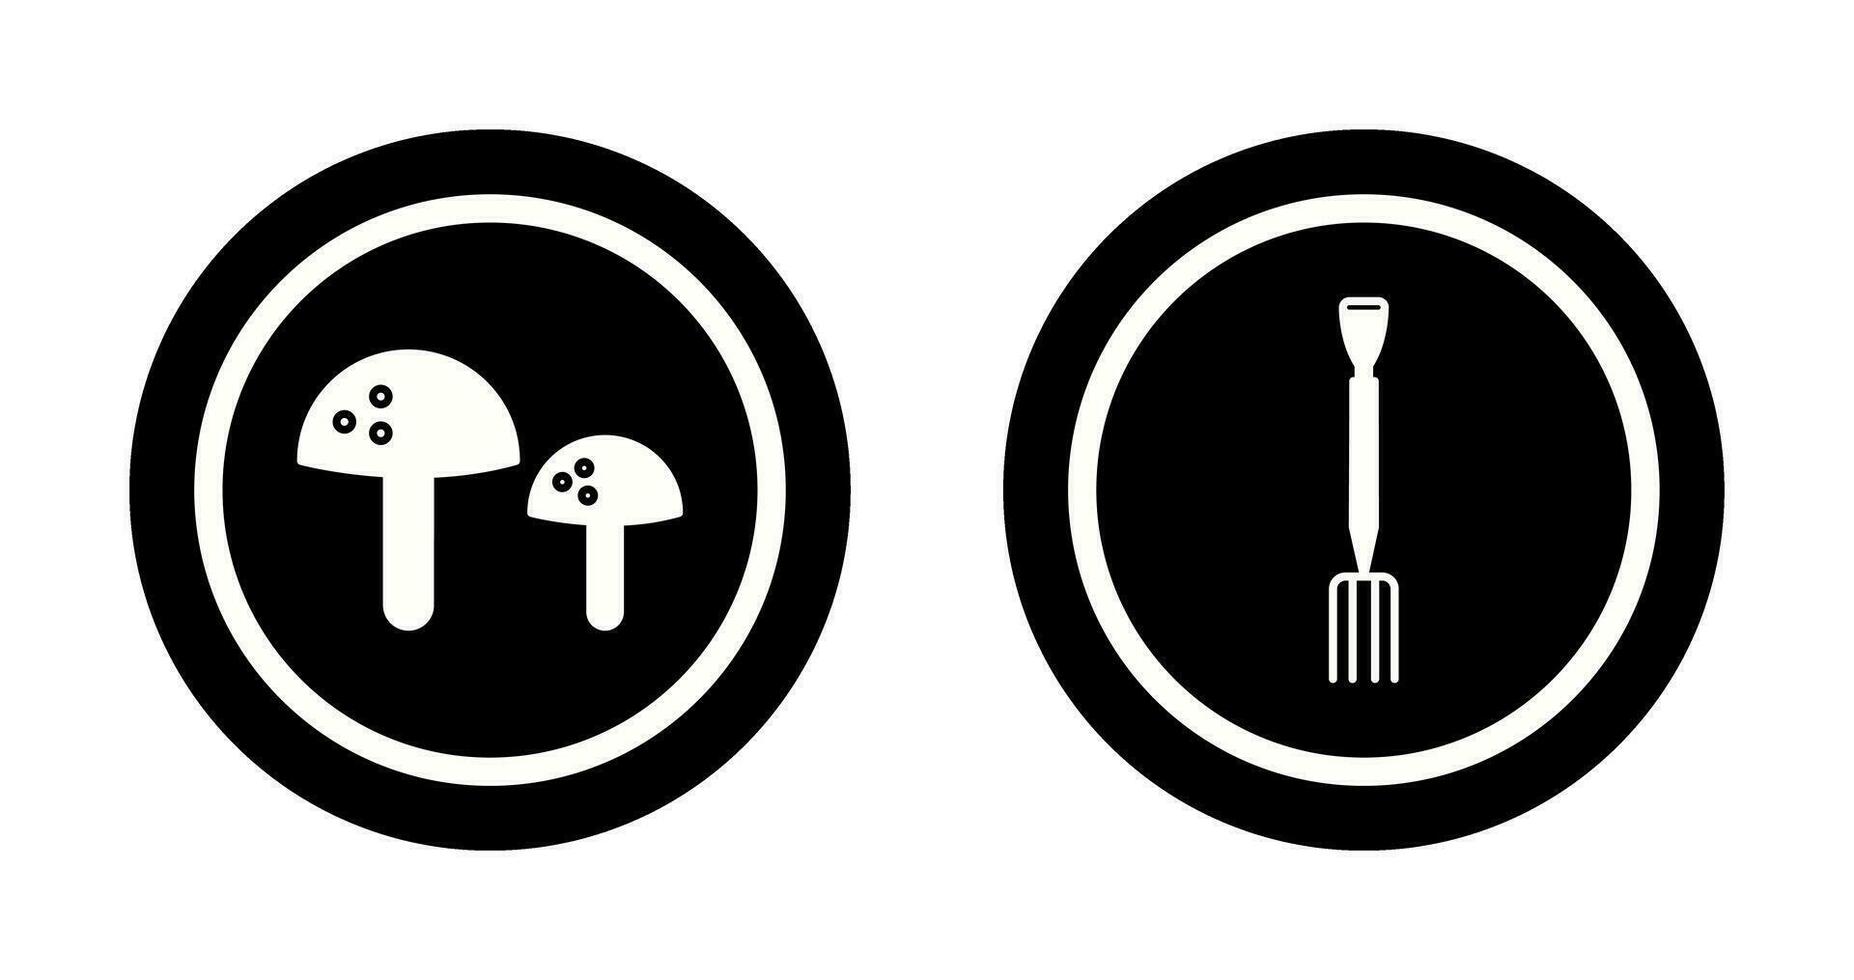 cogumelos e jardinagem garfo ícone vetor